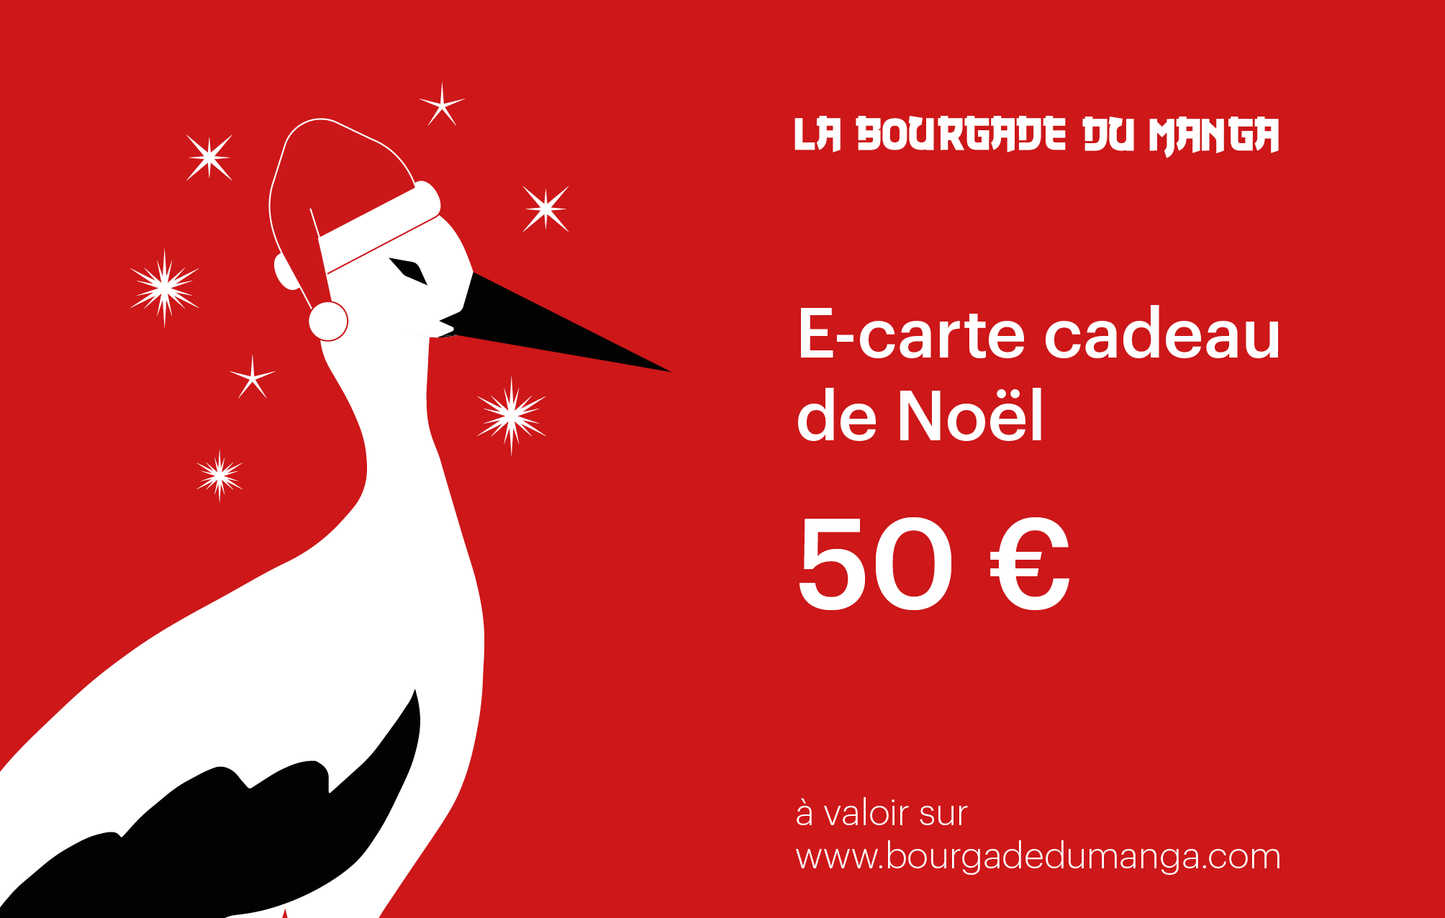 Carte Cadeau de Nöel La Bourgade du Manga 50 euros